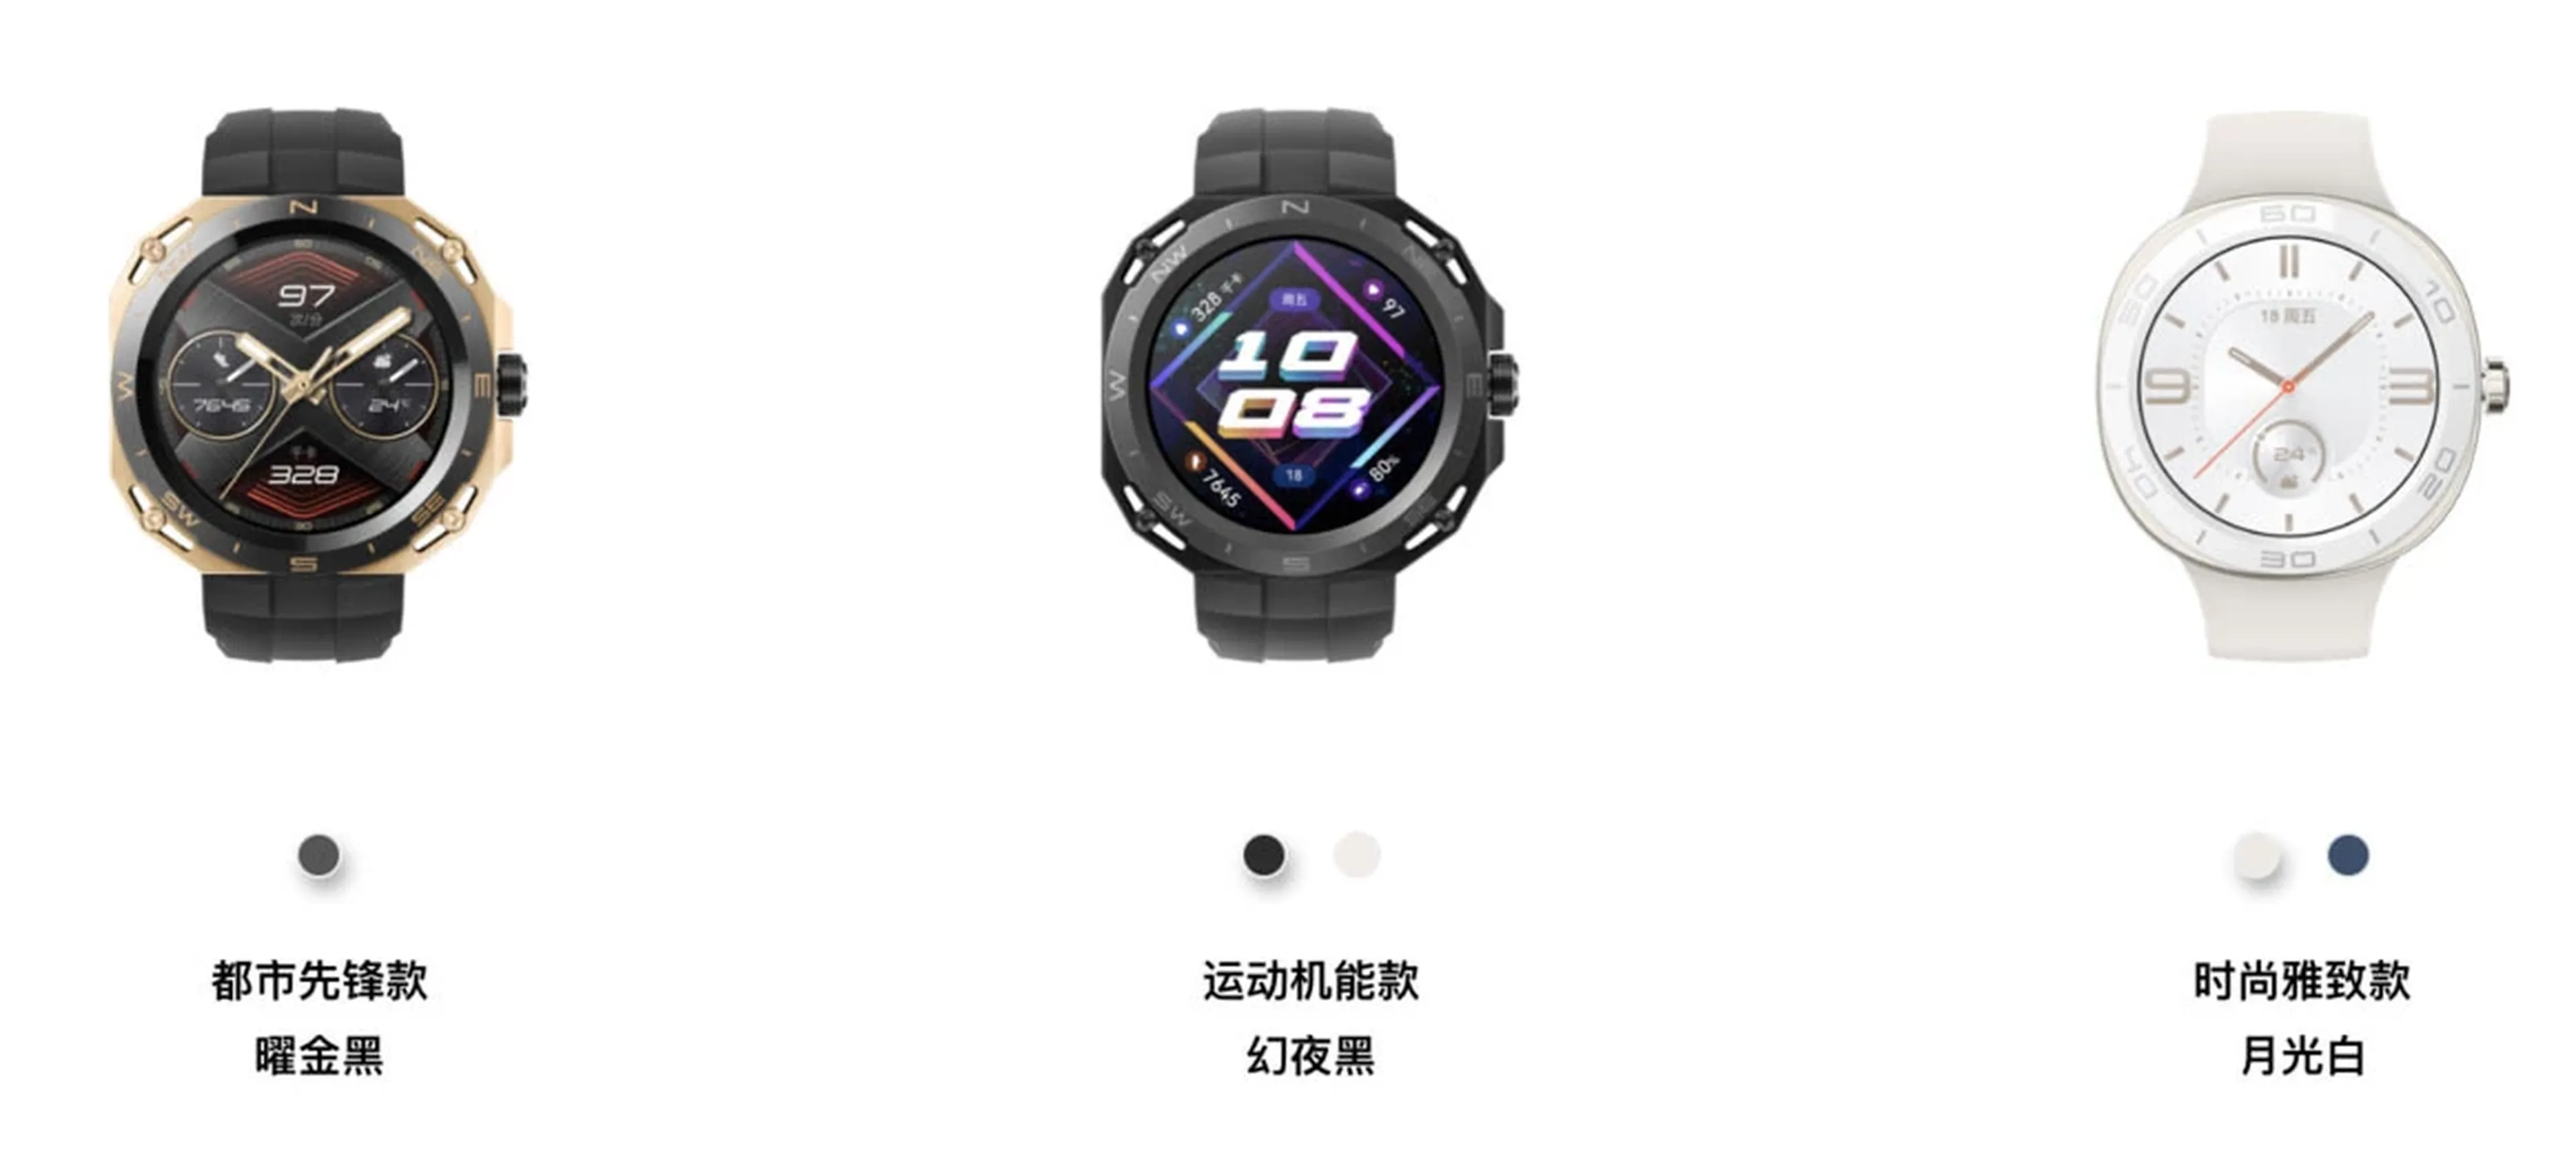 Huawei Watch GT Cyber edición Urban, Sport y Fashion, respectivamente.